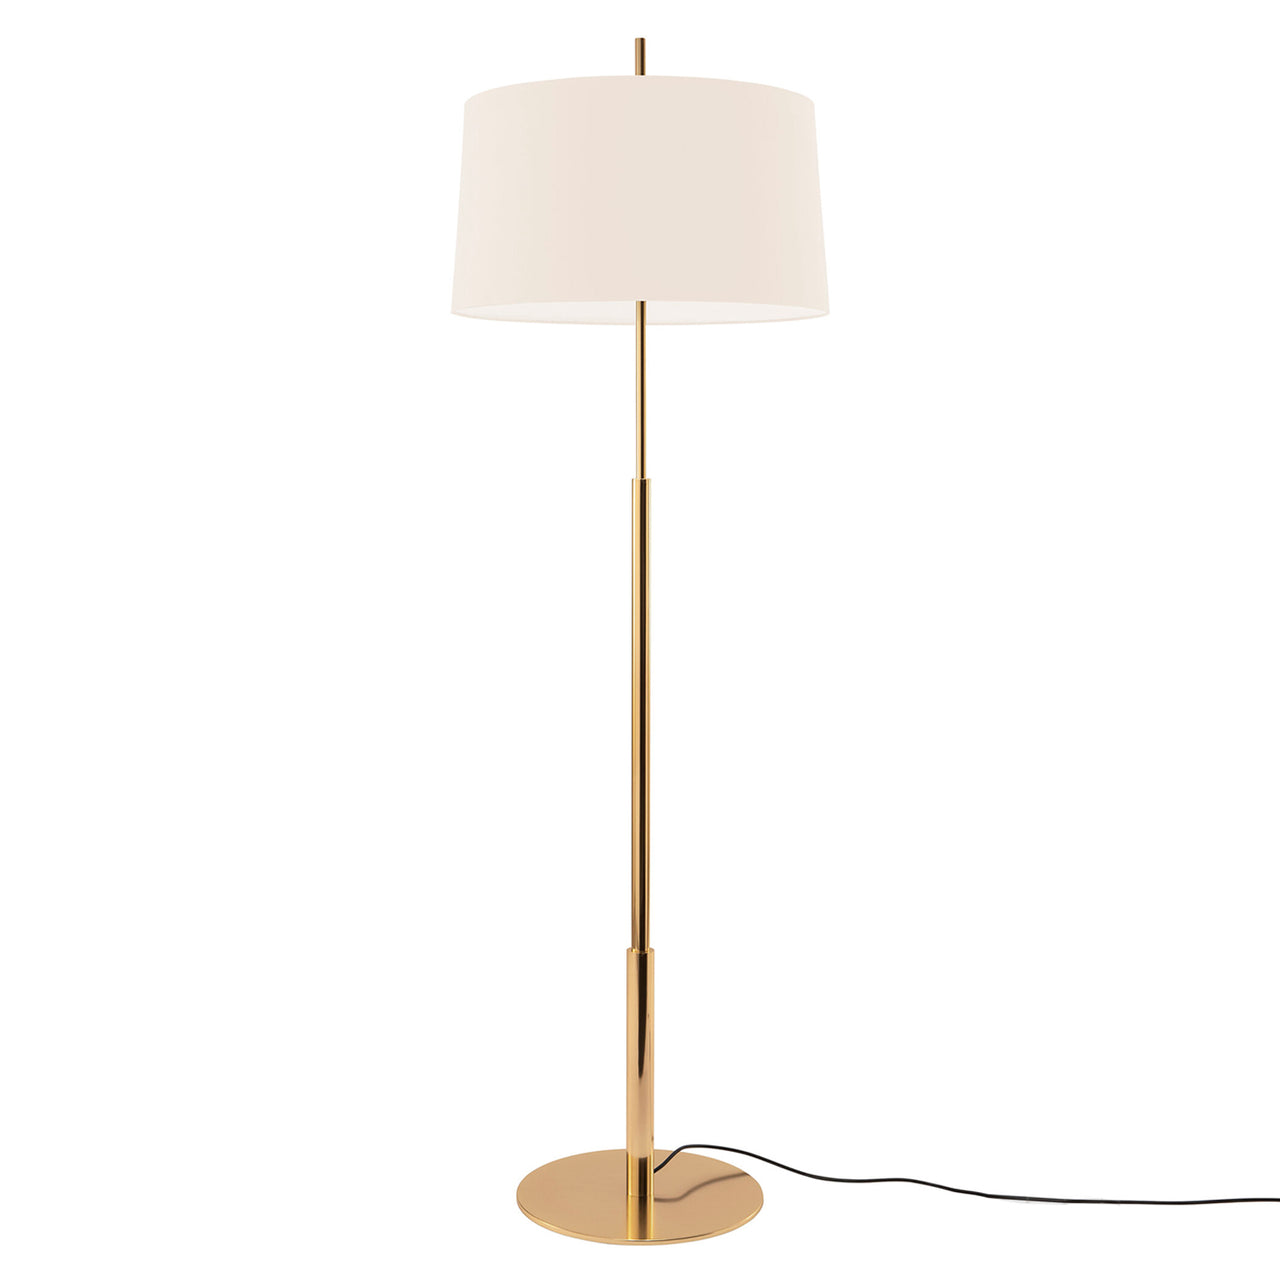 Diana Floor Lamp: High + White Linen + Shiny Gold